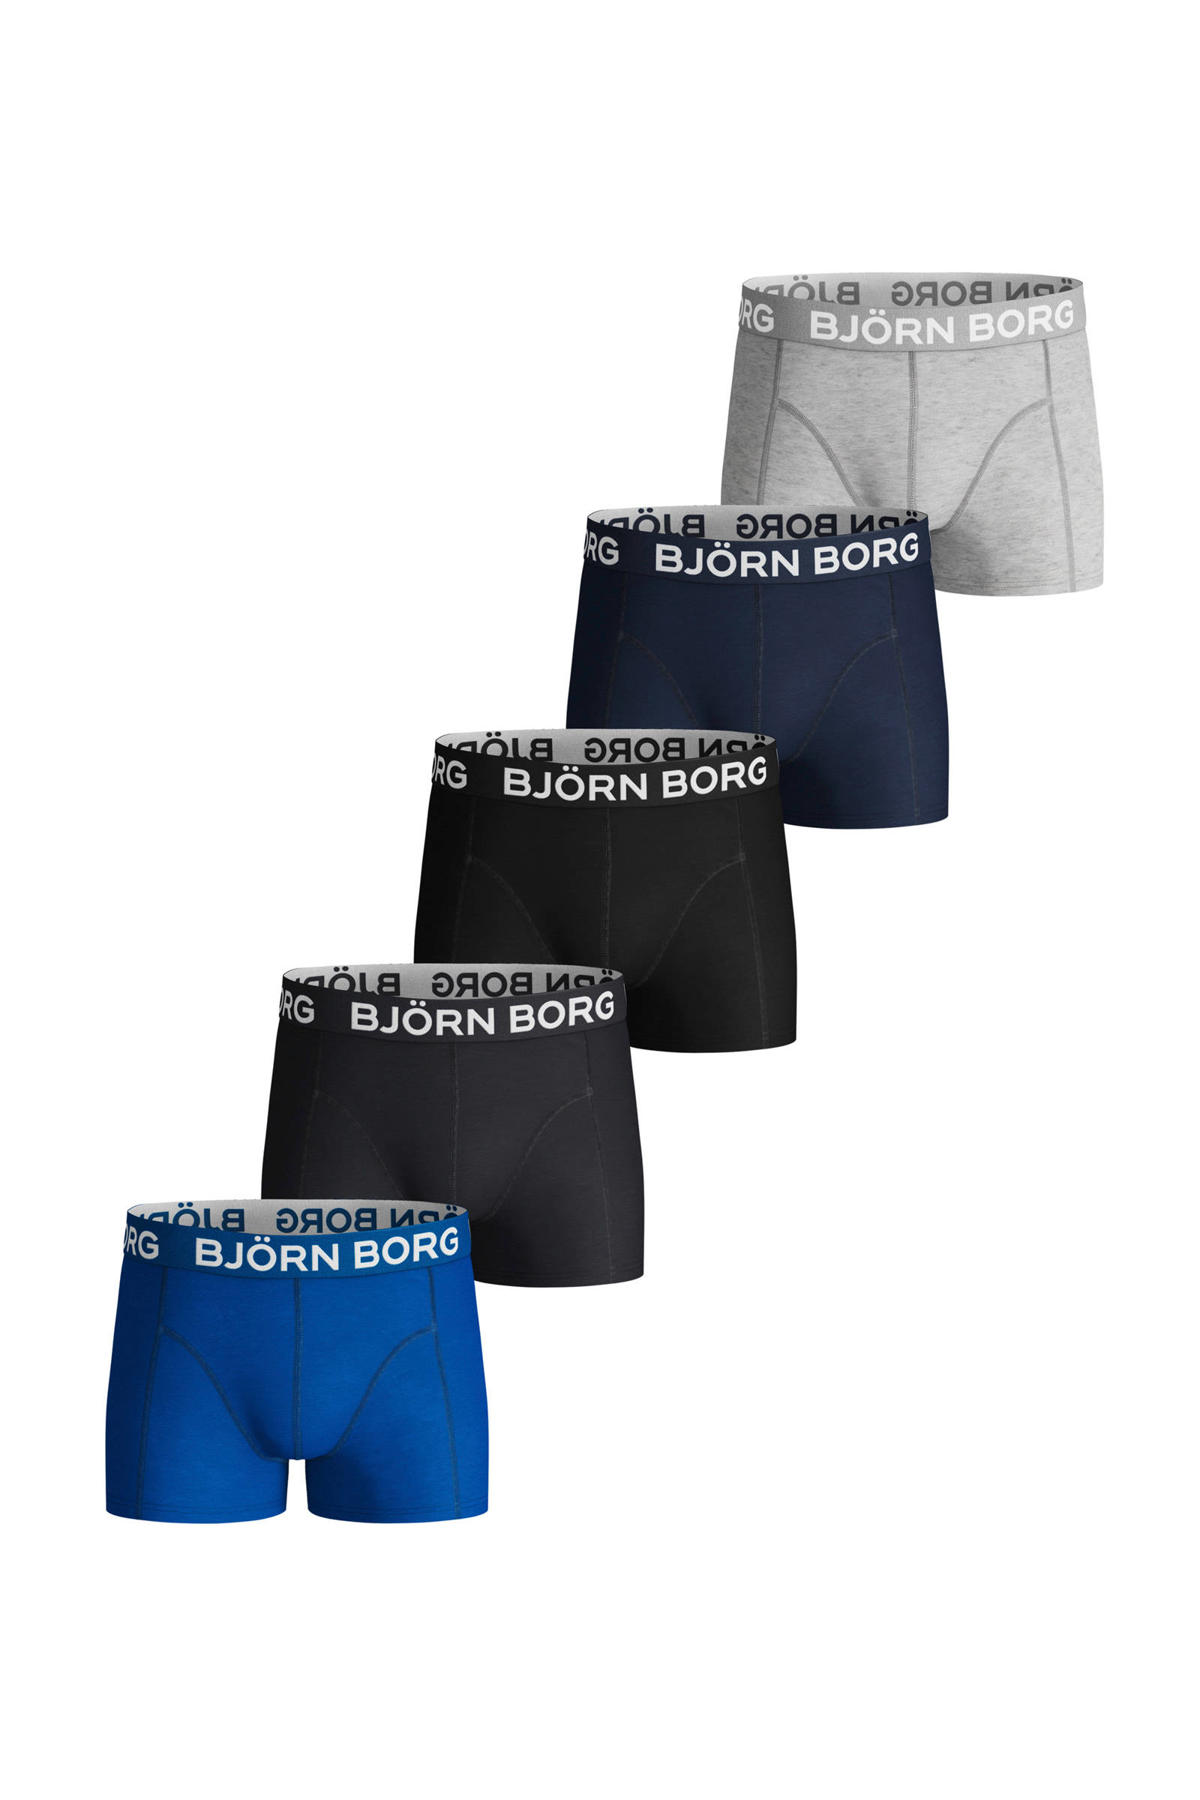 Surrey rechtop Hou op Björn Borg boxershort - set van 5 blauw/zwart/grijs | wehkamp